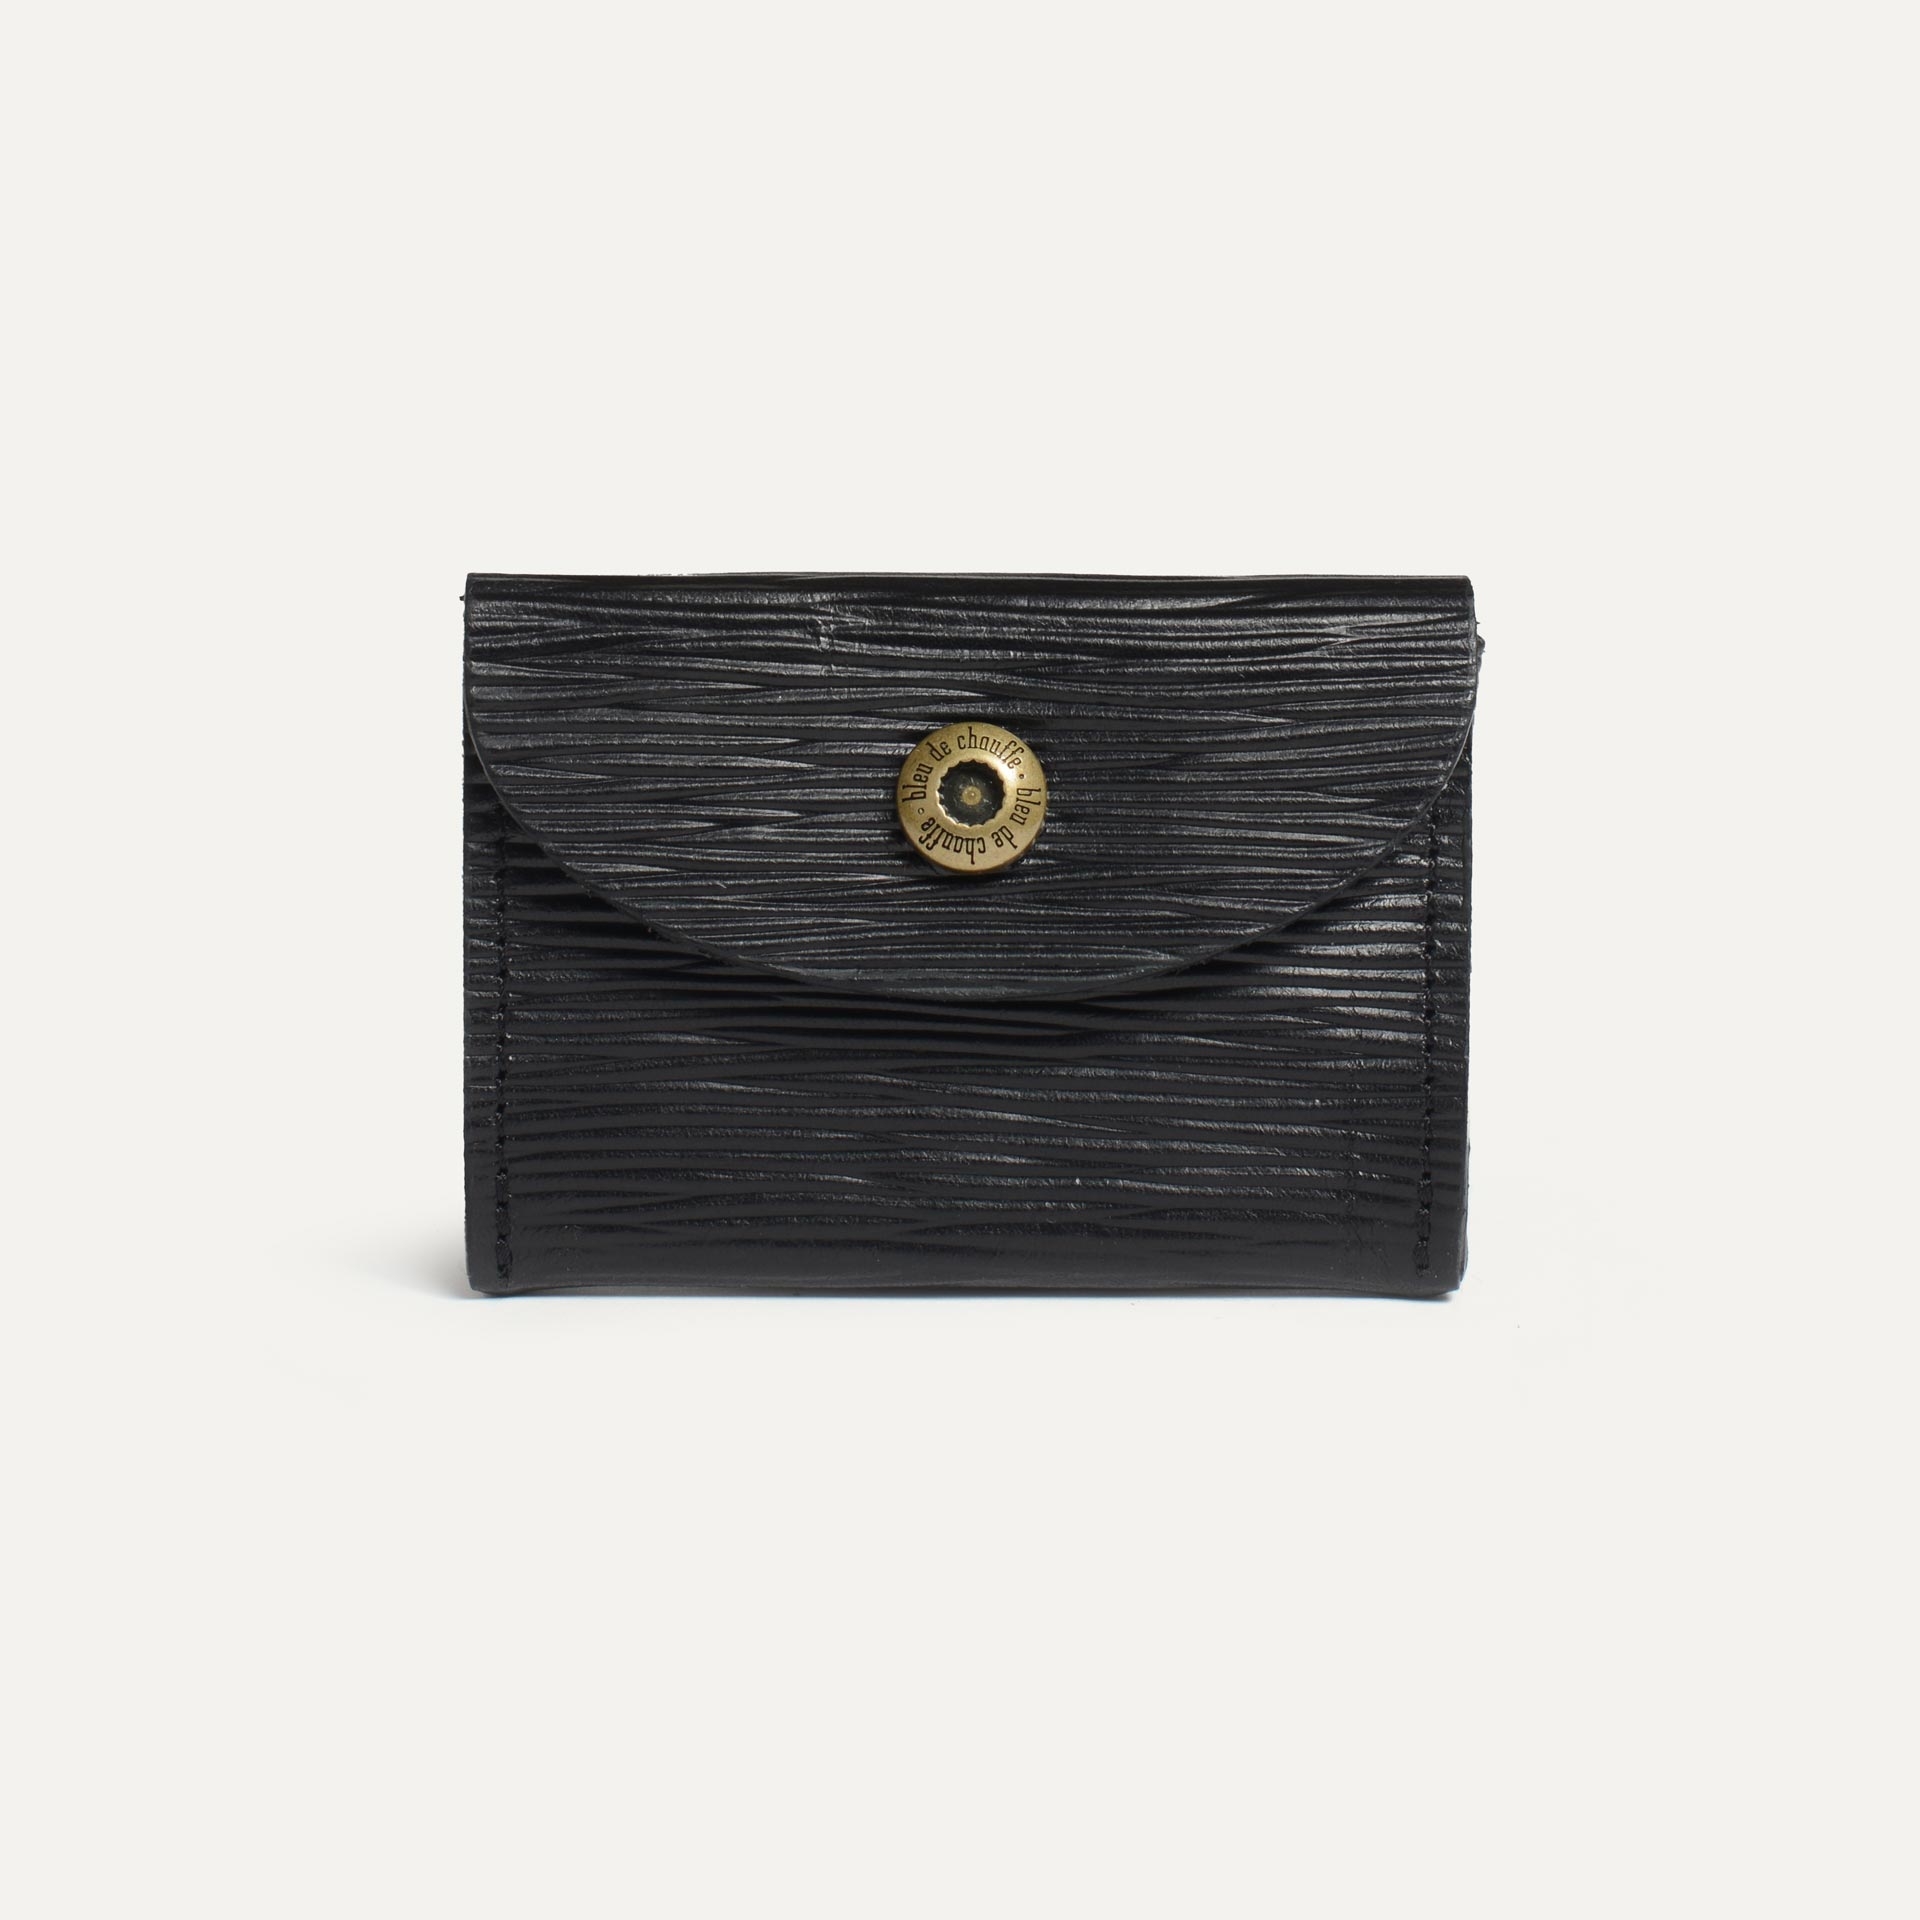 Talbin Shoemaker purse - black épi leather (image n°1)